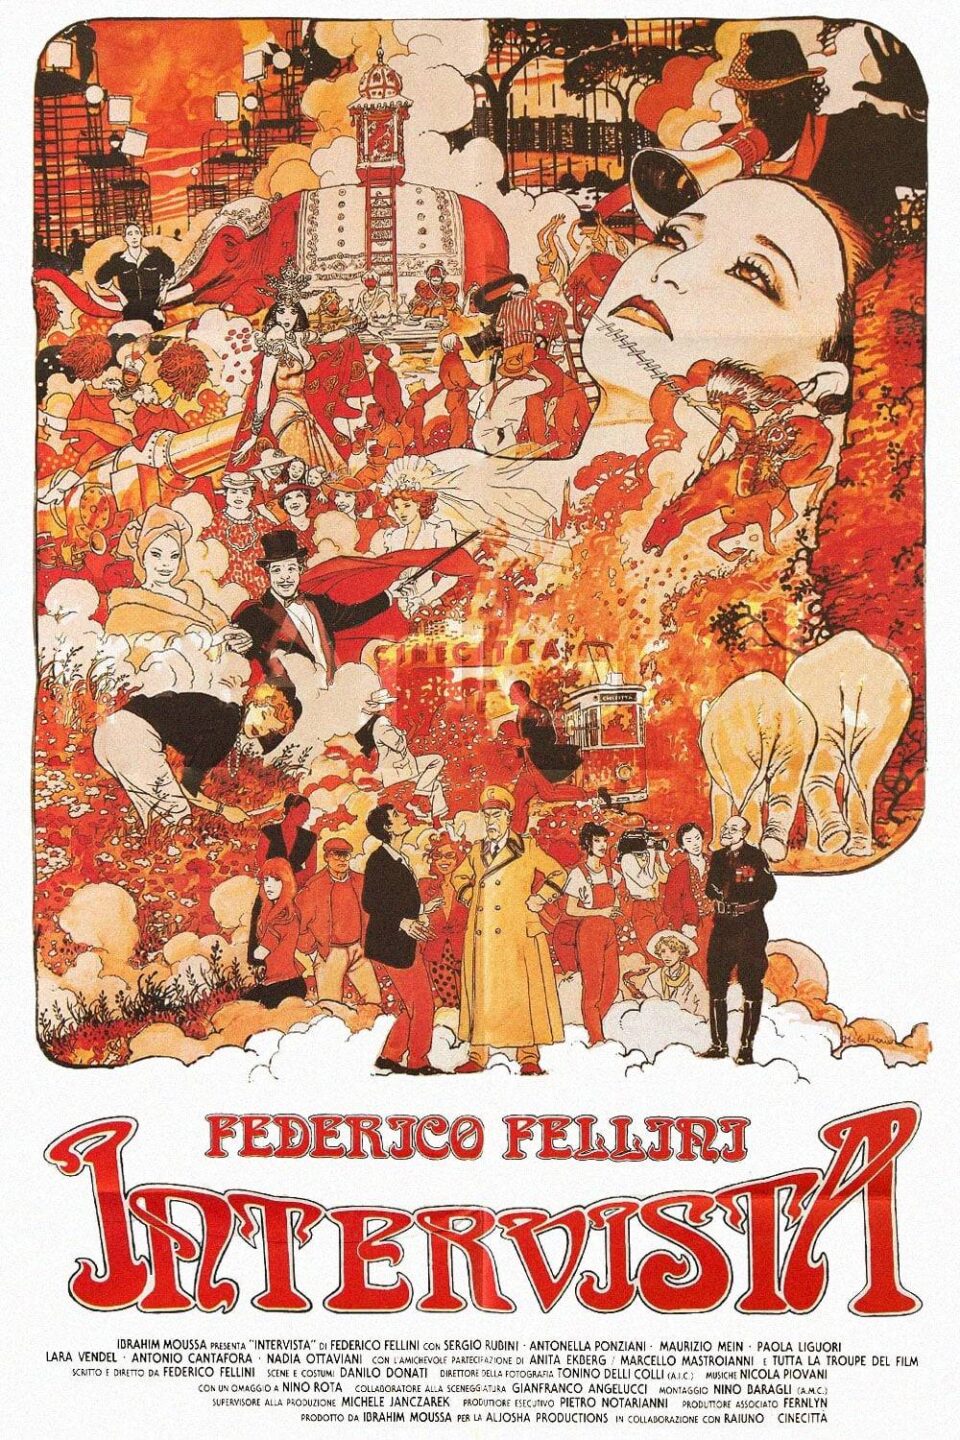 Film Tv 27 novembre. Intervista. La confessione meta-cinematografica di Fellini
La recensione del film su VigilanzaTv